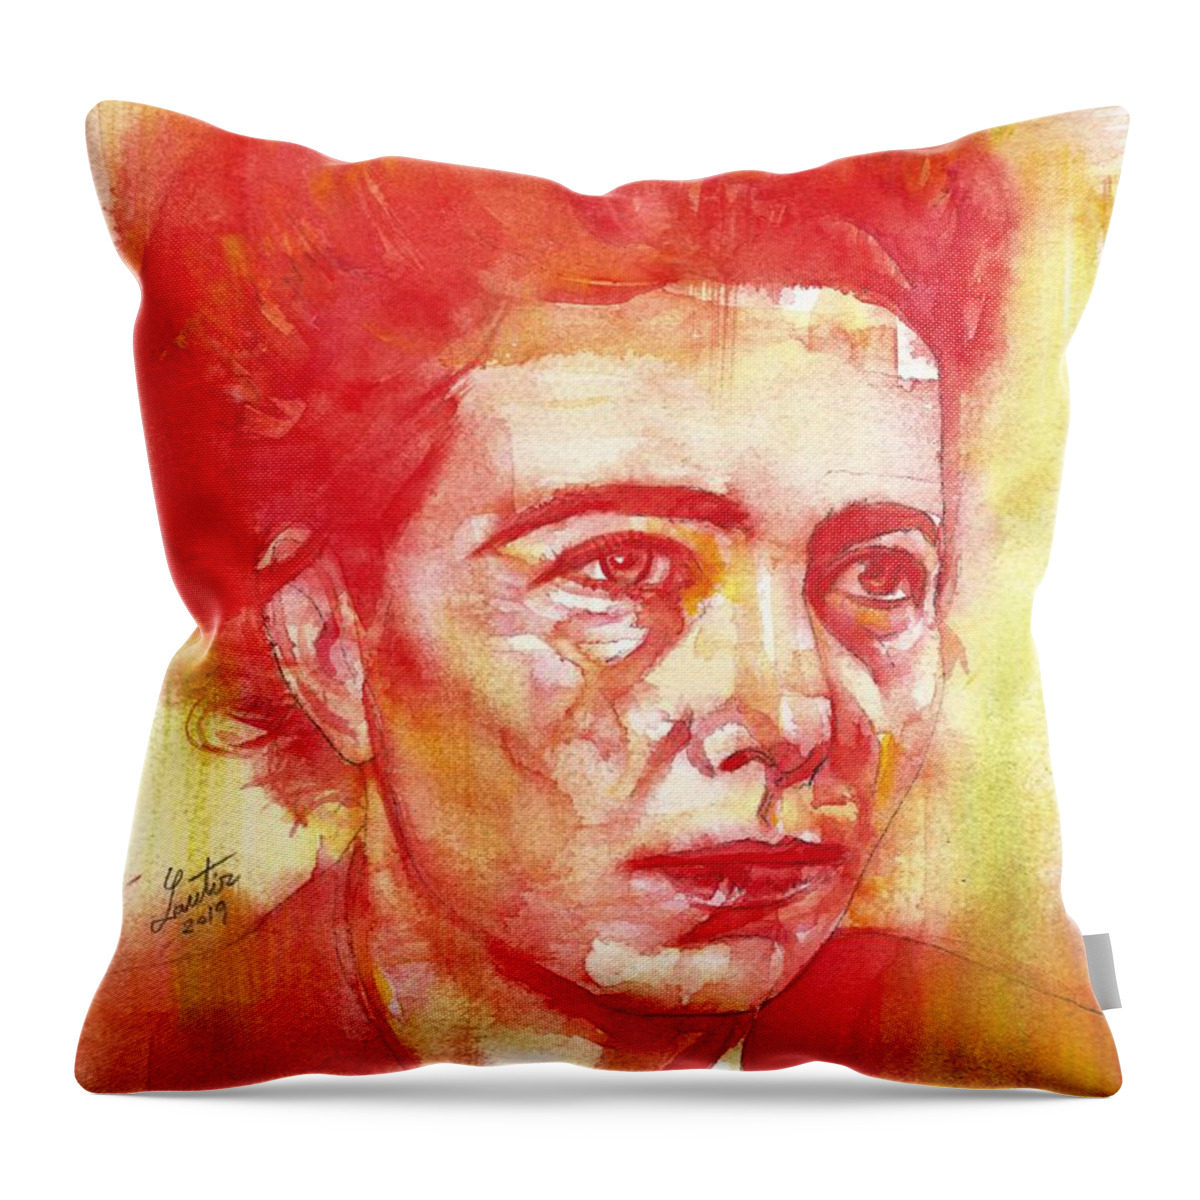 Simone De Beauvoir Throw Pillow featuring the painting SIMONE DE BEAUVOIR - watercolor portrait.4 by Fabrizio Cassetta